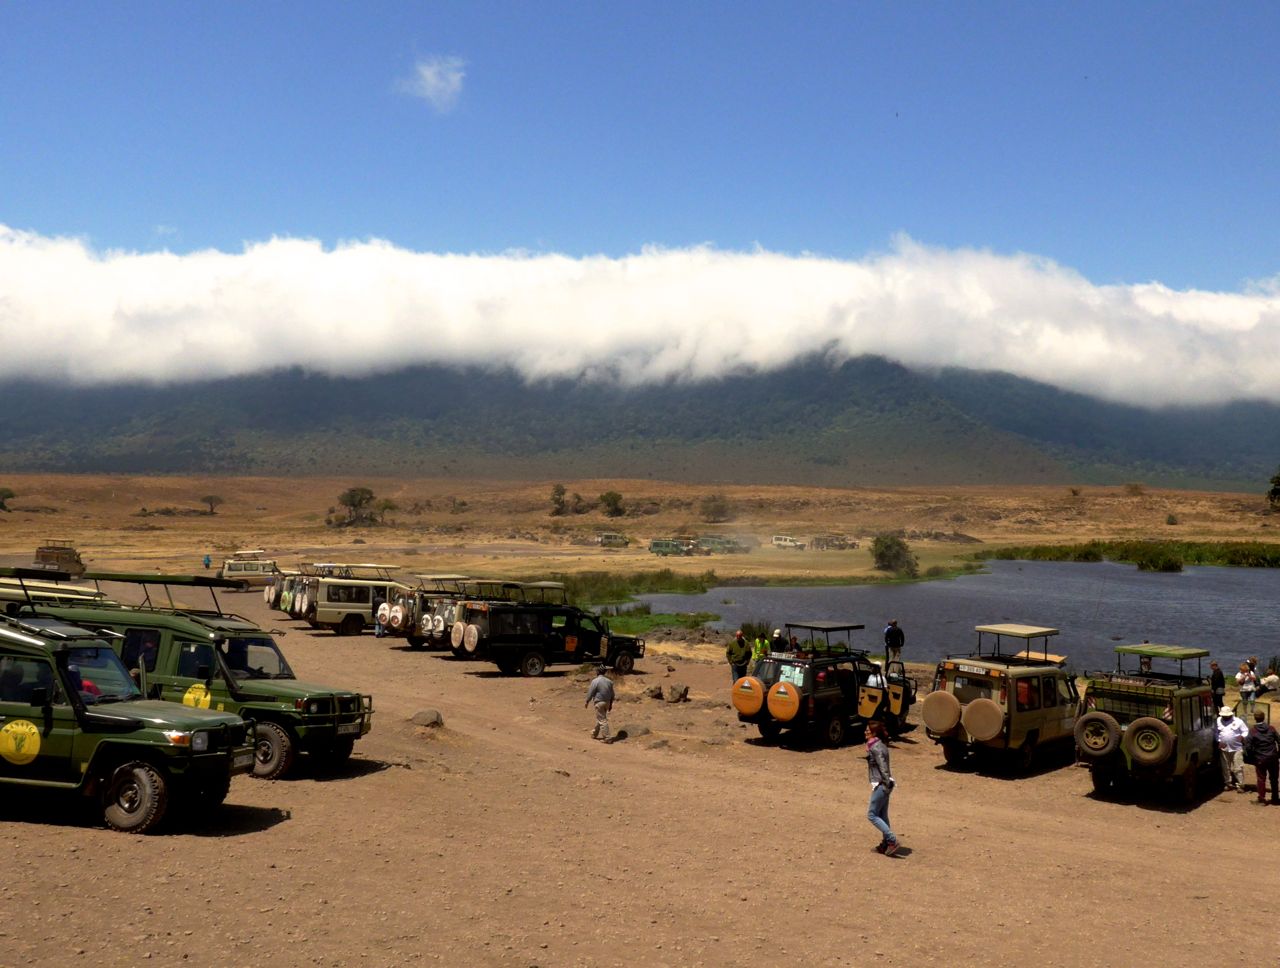 Os carros de safari no Ngorongoro.